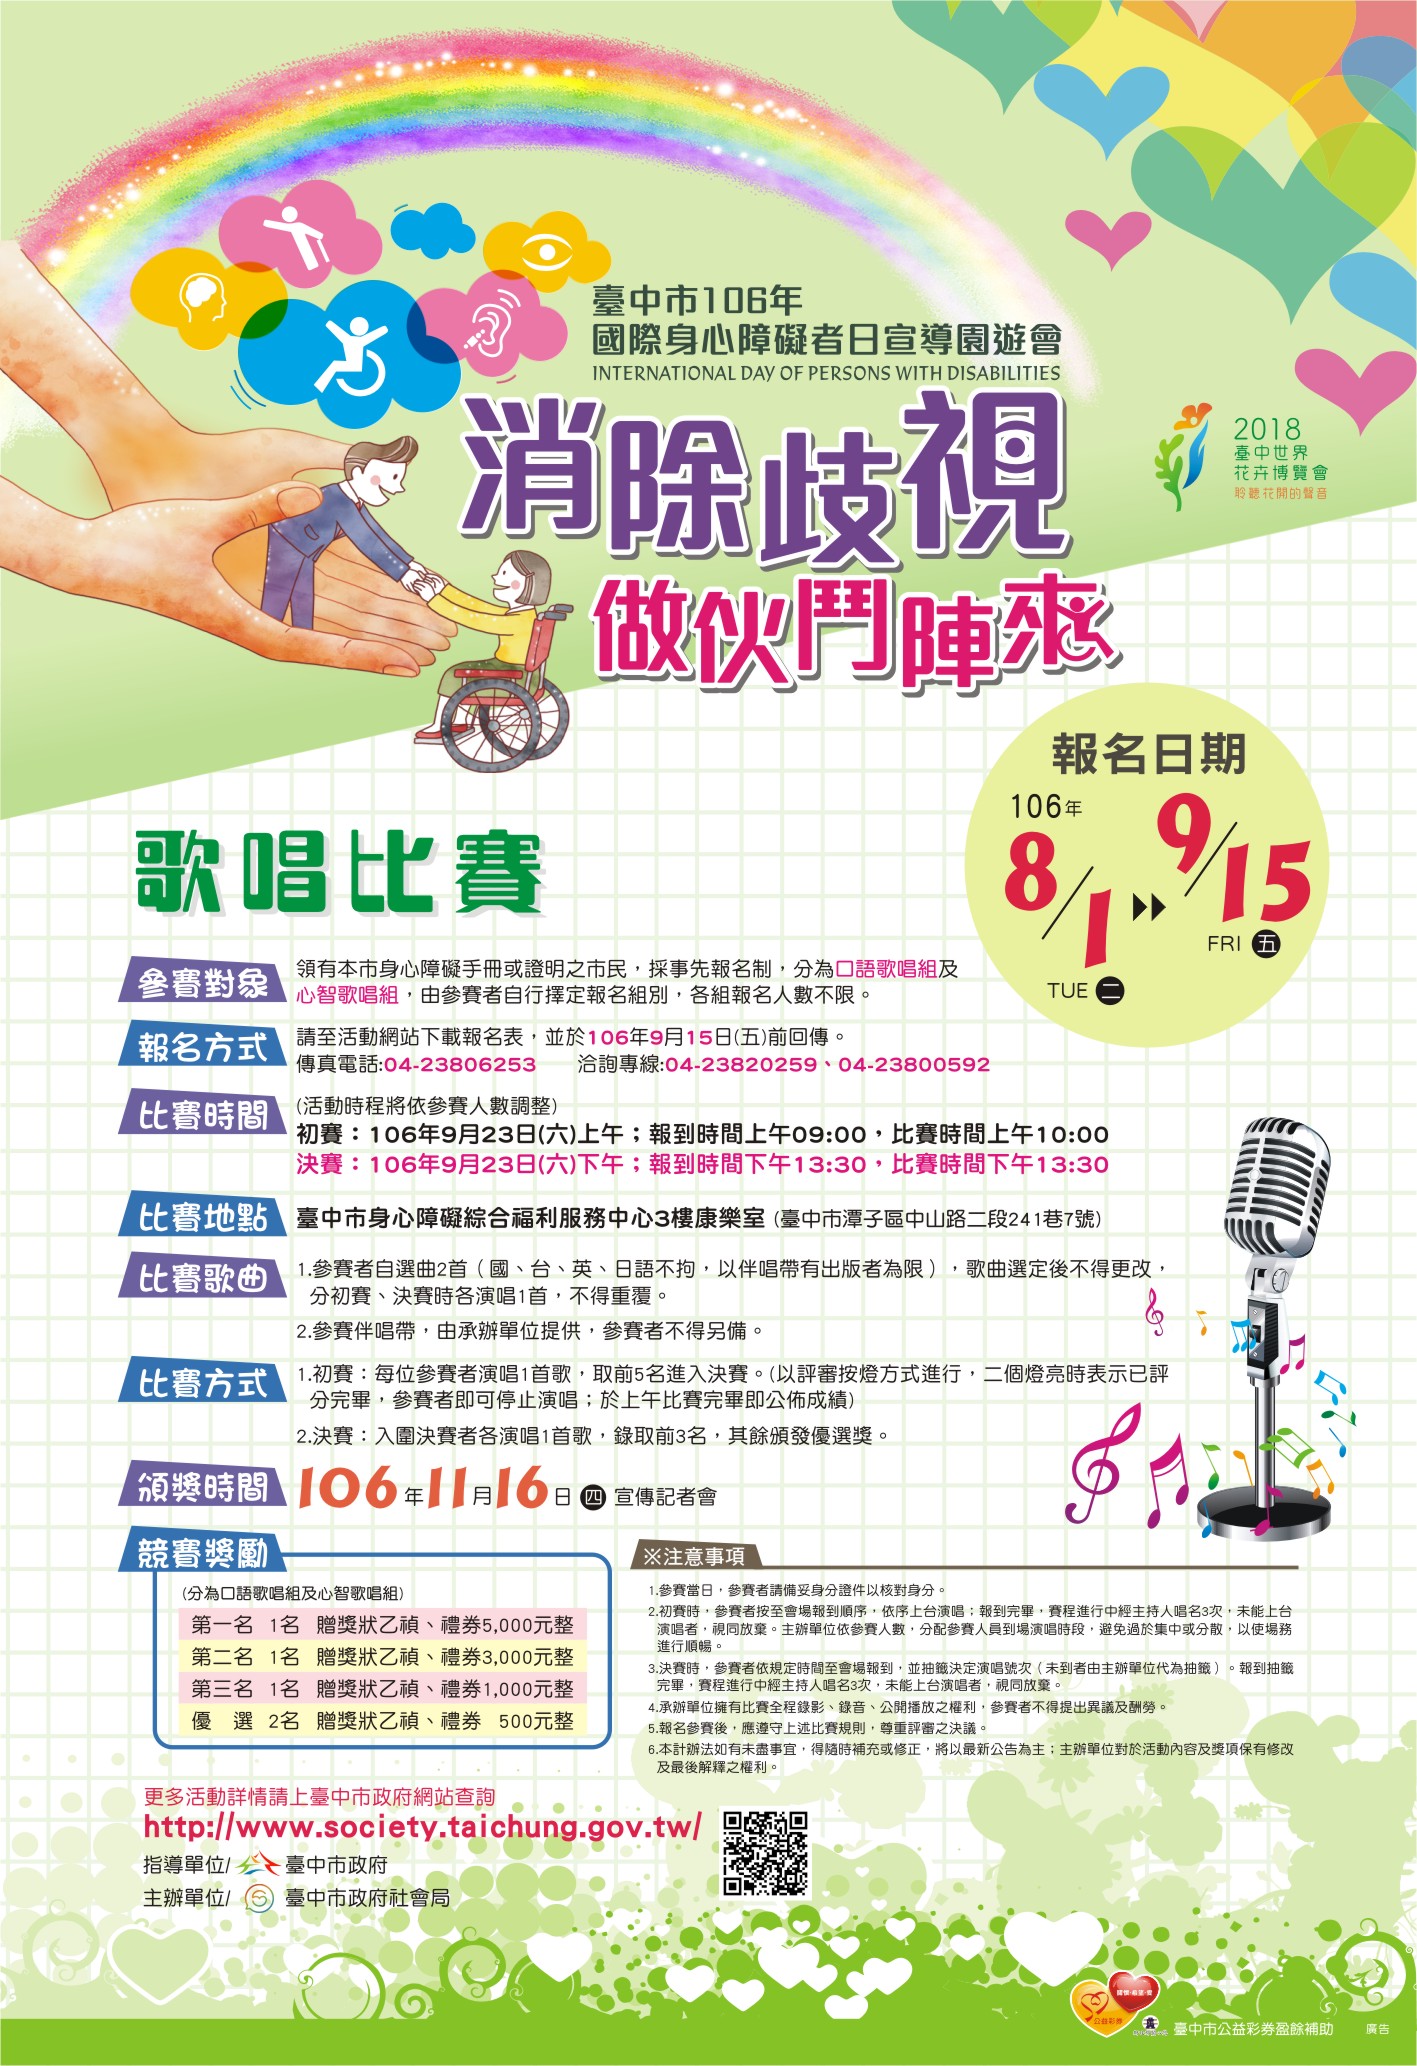 臺中市106年國際身心障礙者日歌唱比賽宣傳海報.jpg